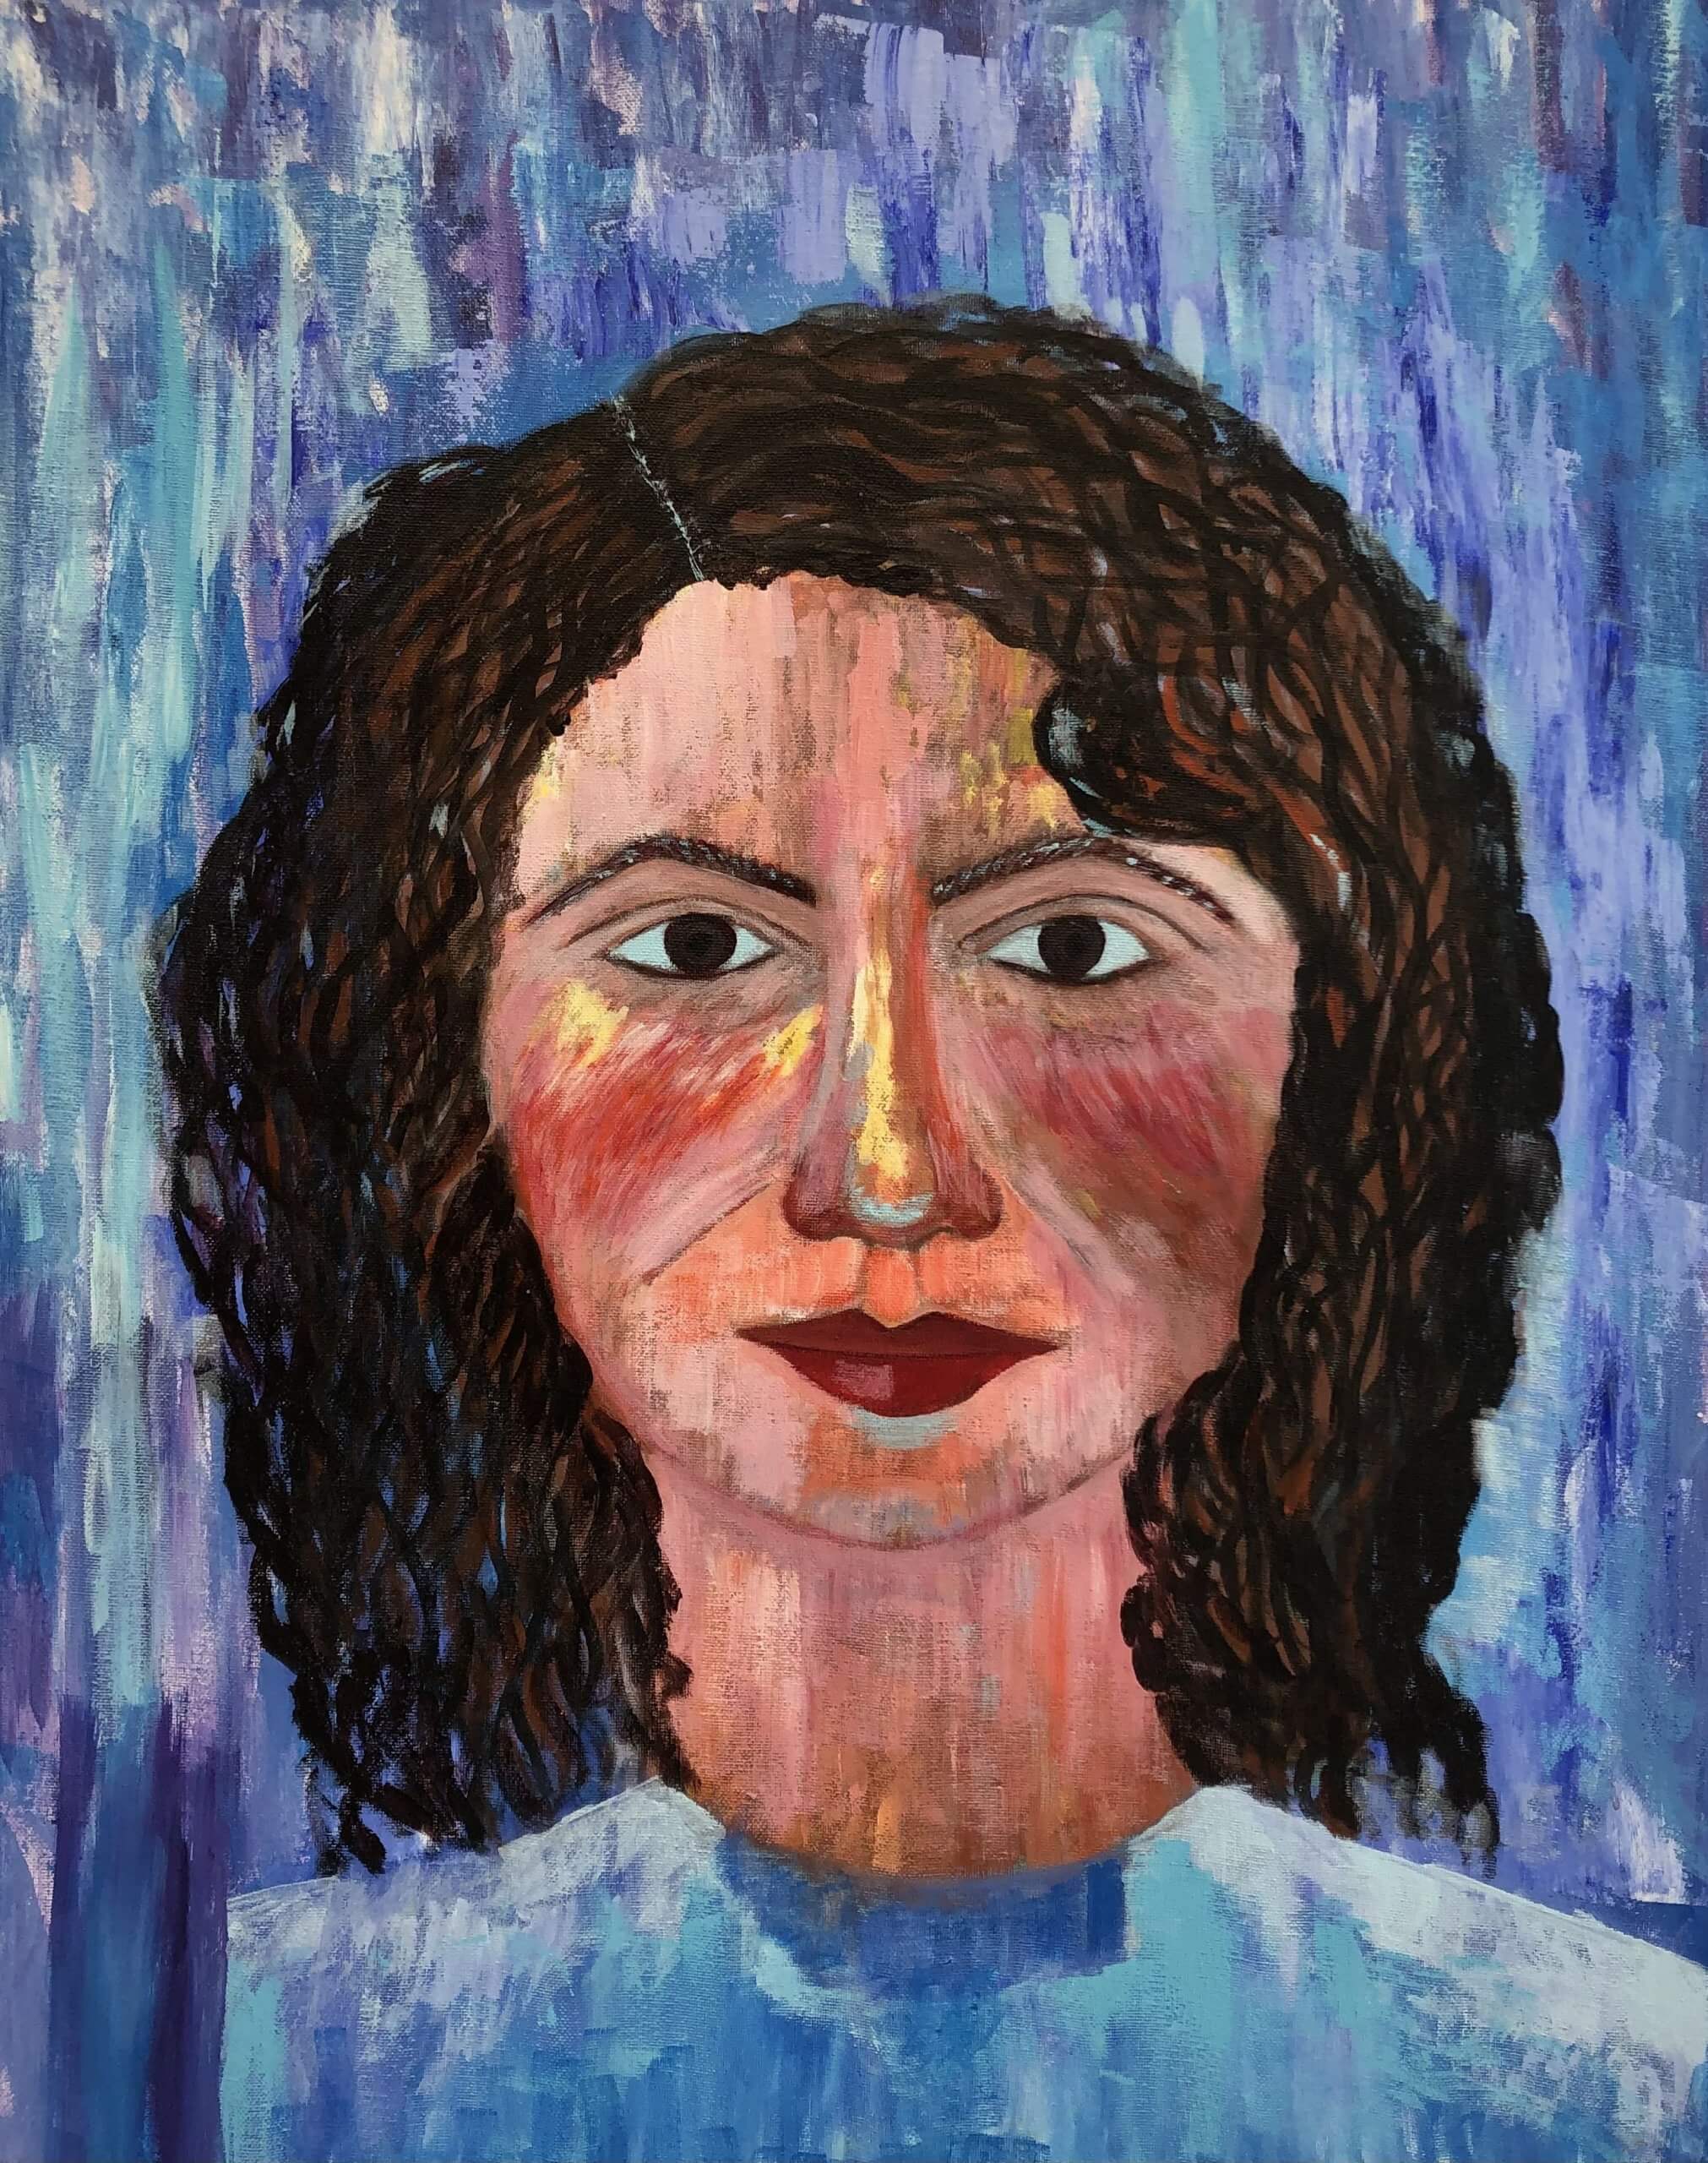 Hoda Awad, "Portrait," Acrylic On Canvas, 24" x 30"